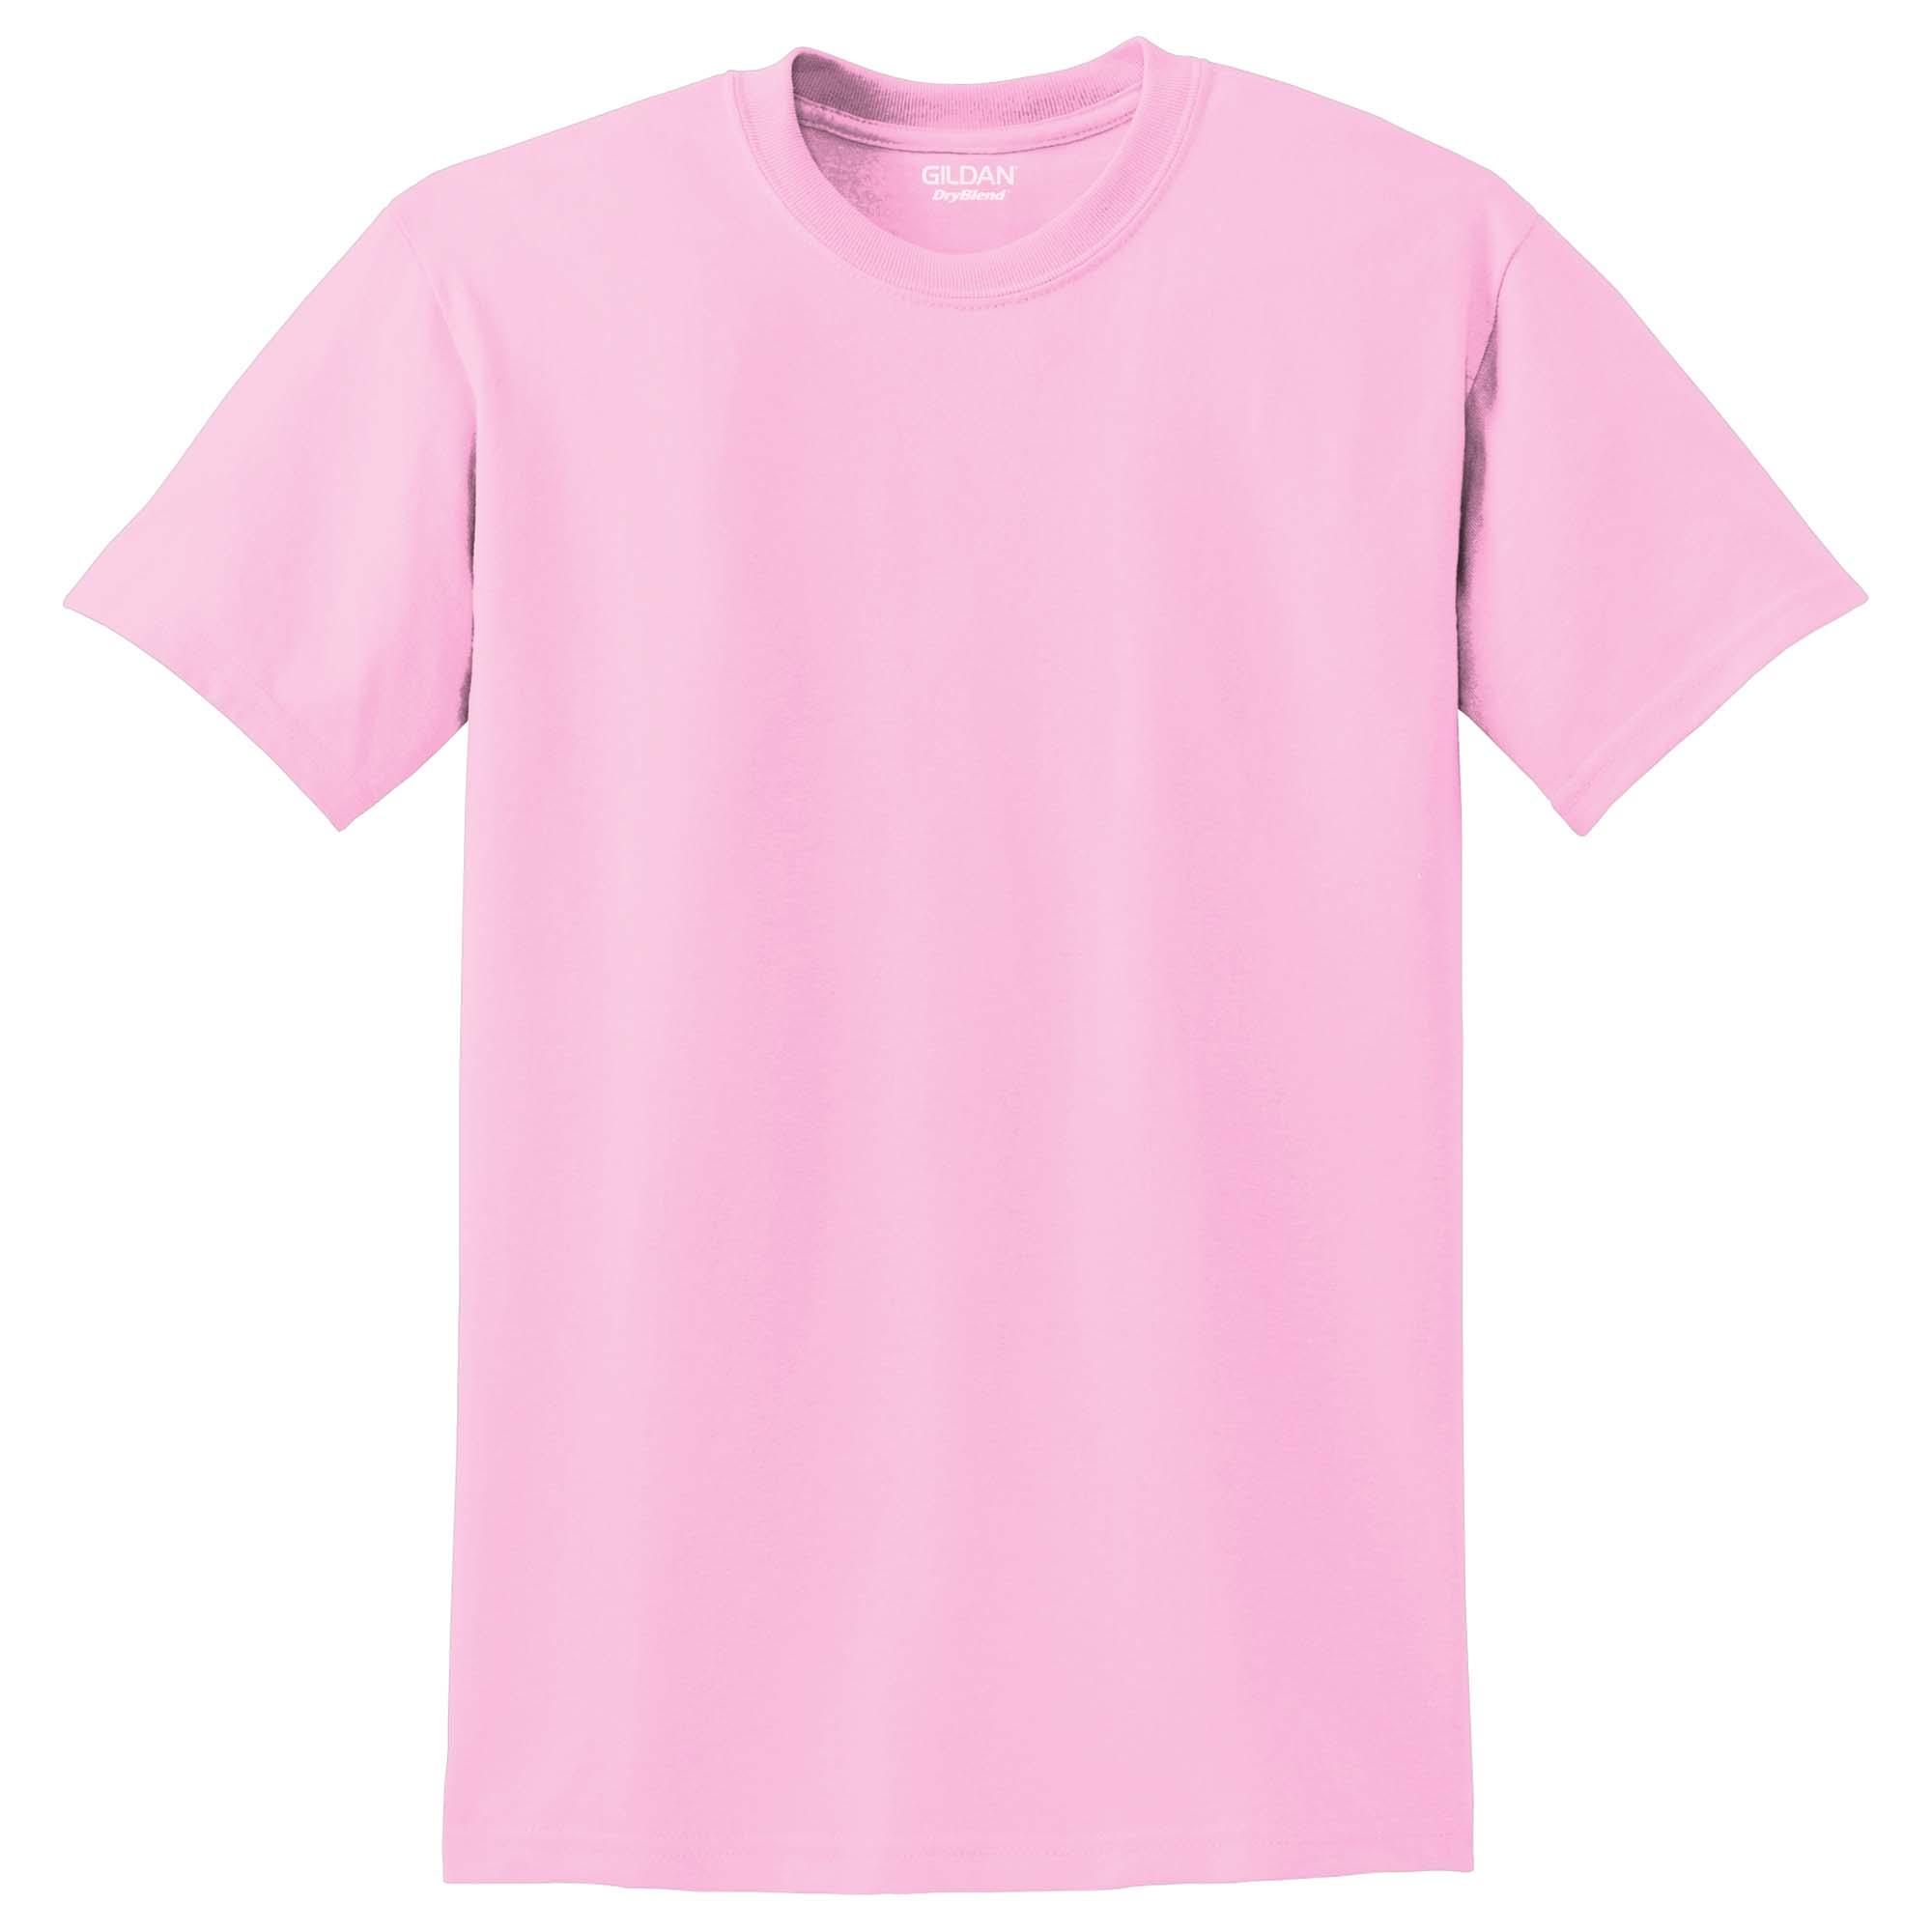 gildan light pink t shirt